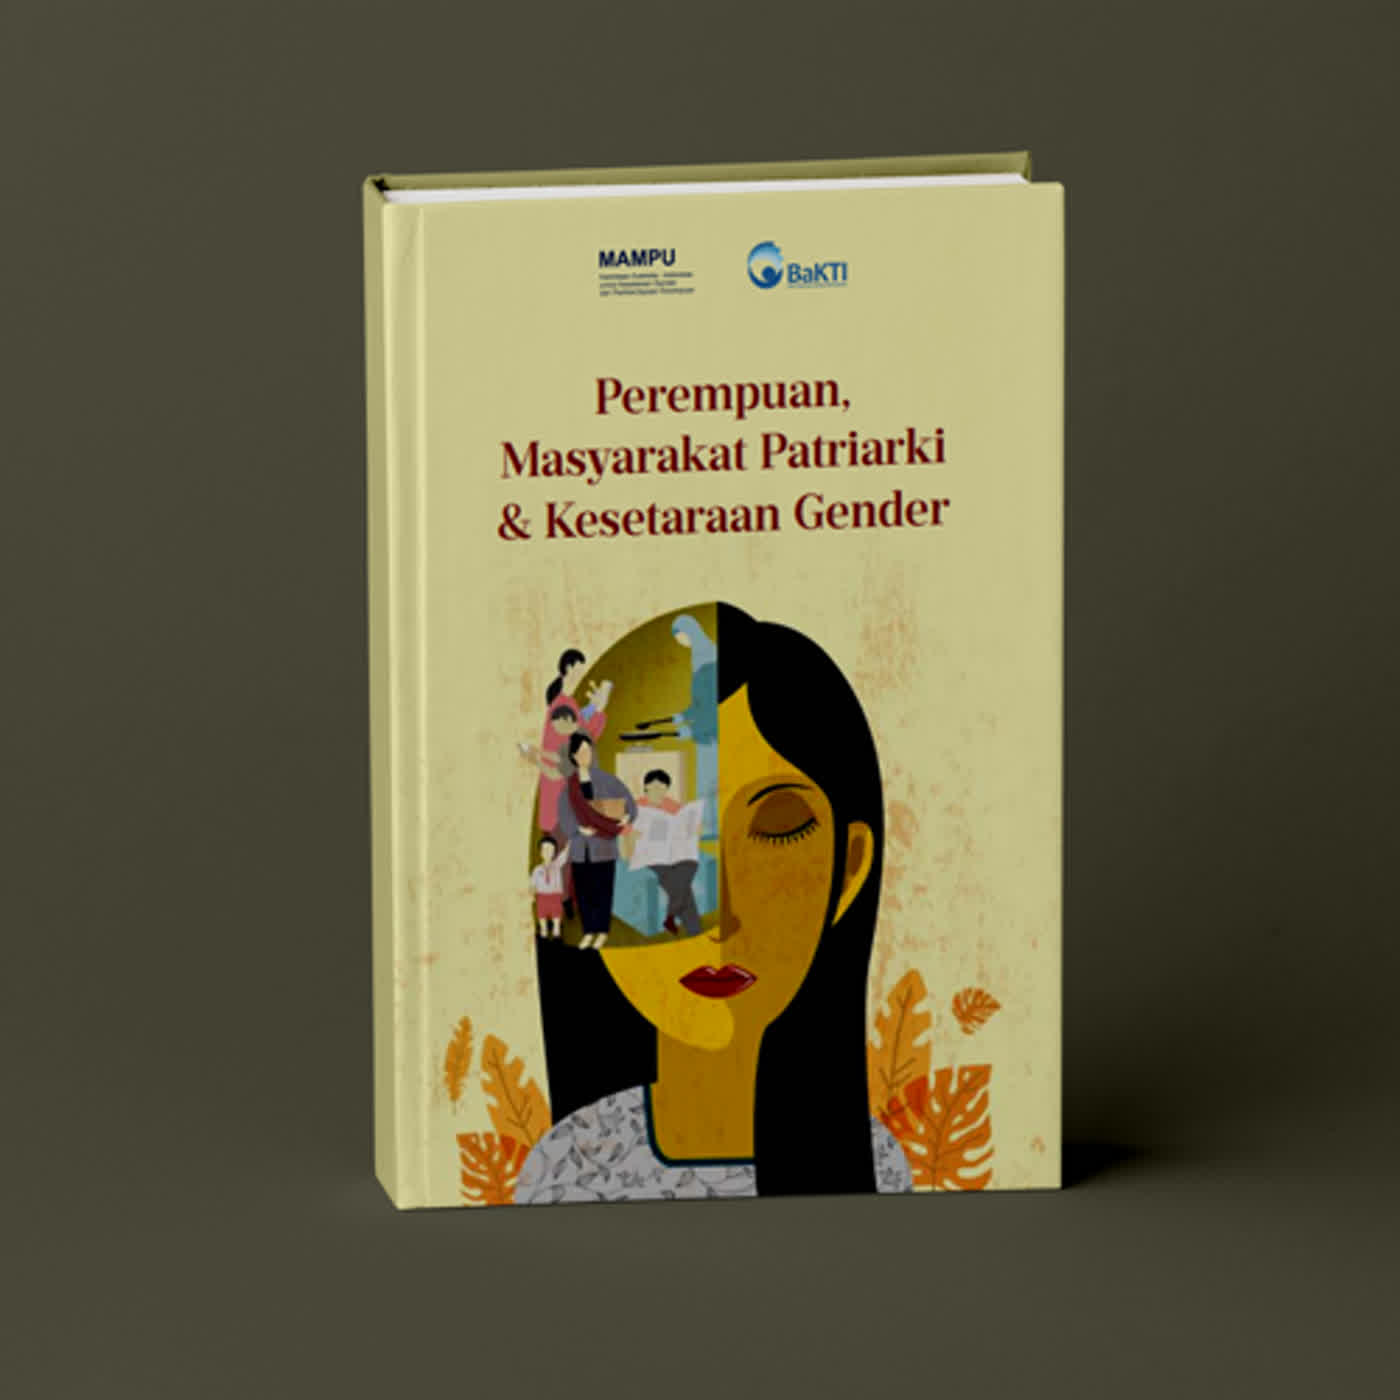 #1 Perempuan, Masyarakat Patriarki & Kesetaraan Gender | Audiobook Indonesia